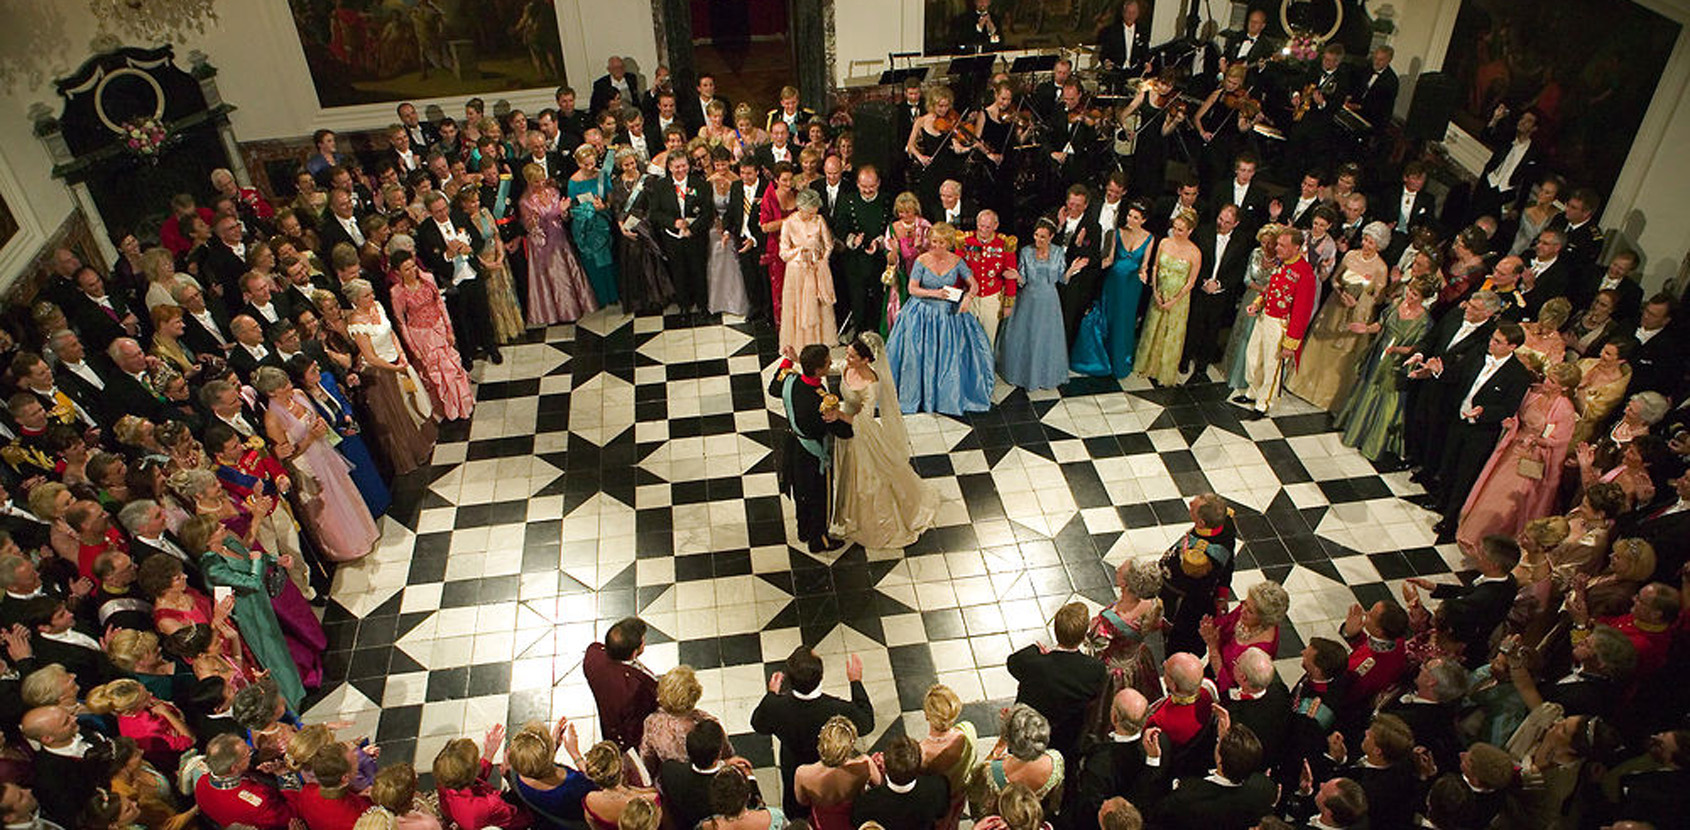 Kronprinsparret dansede brudevals i slottets kuppelsal. Foto: Scanpix / Jørgen Jessen